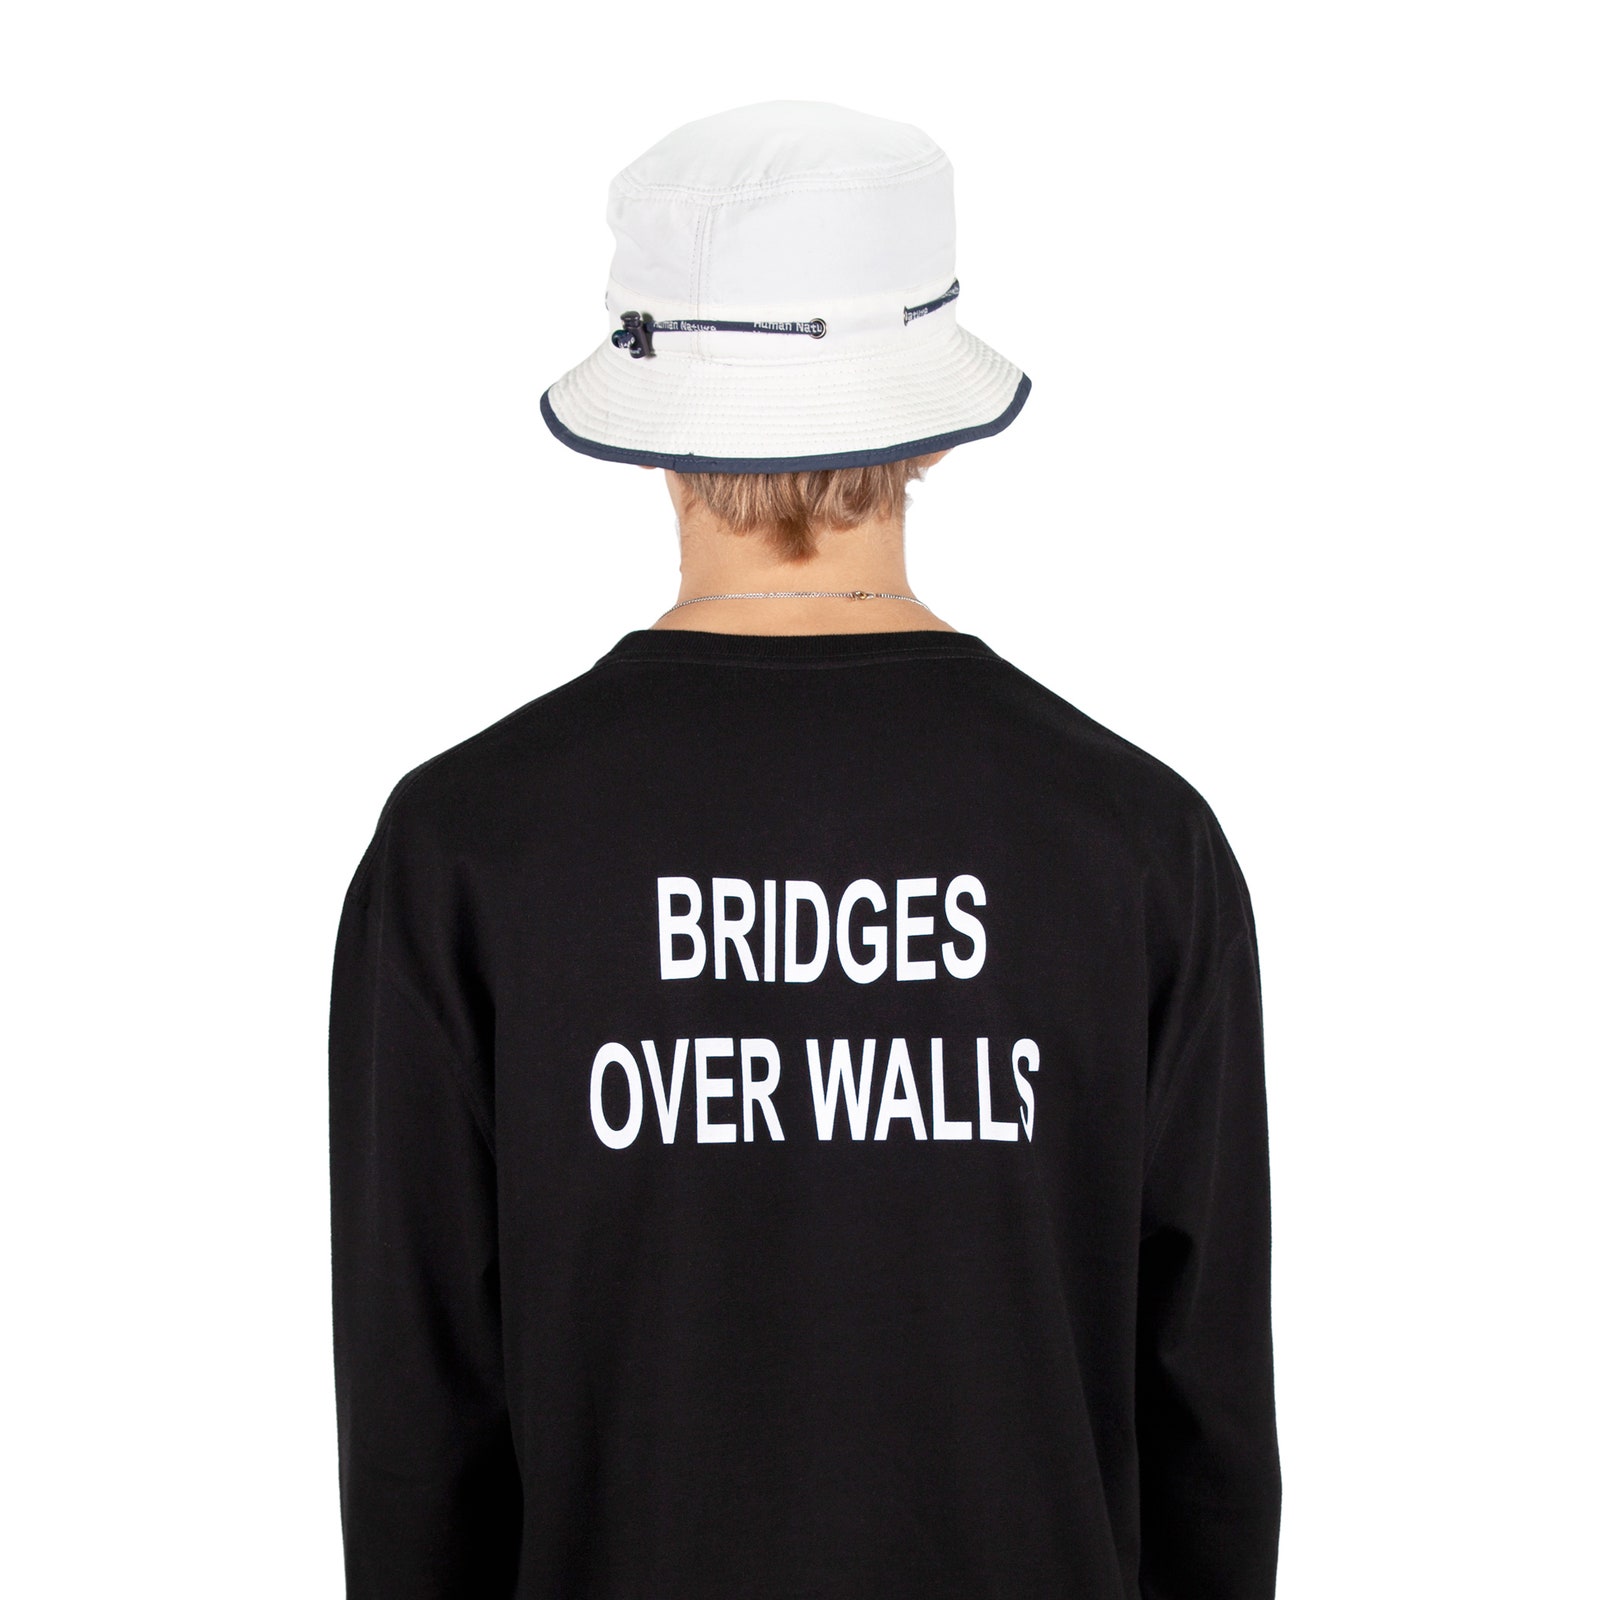 Bridges Over Walls, la T-shirt di Souvenir Official per dire no a tutti i muri